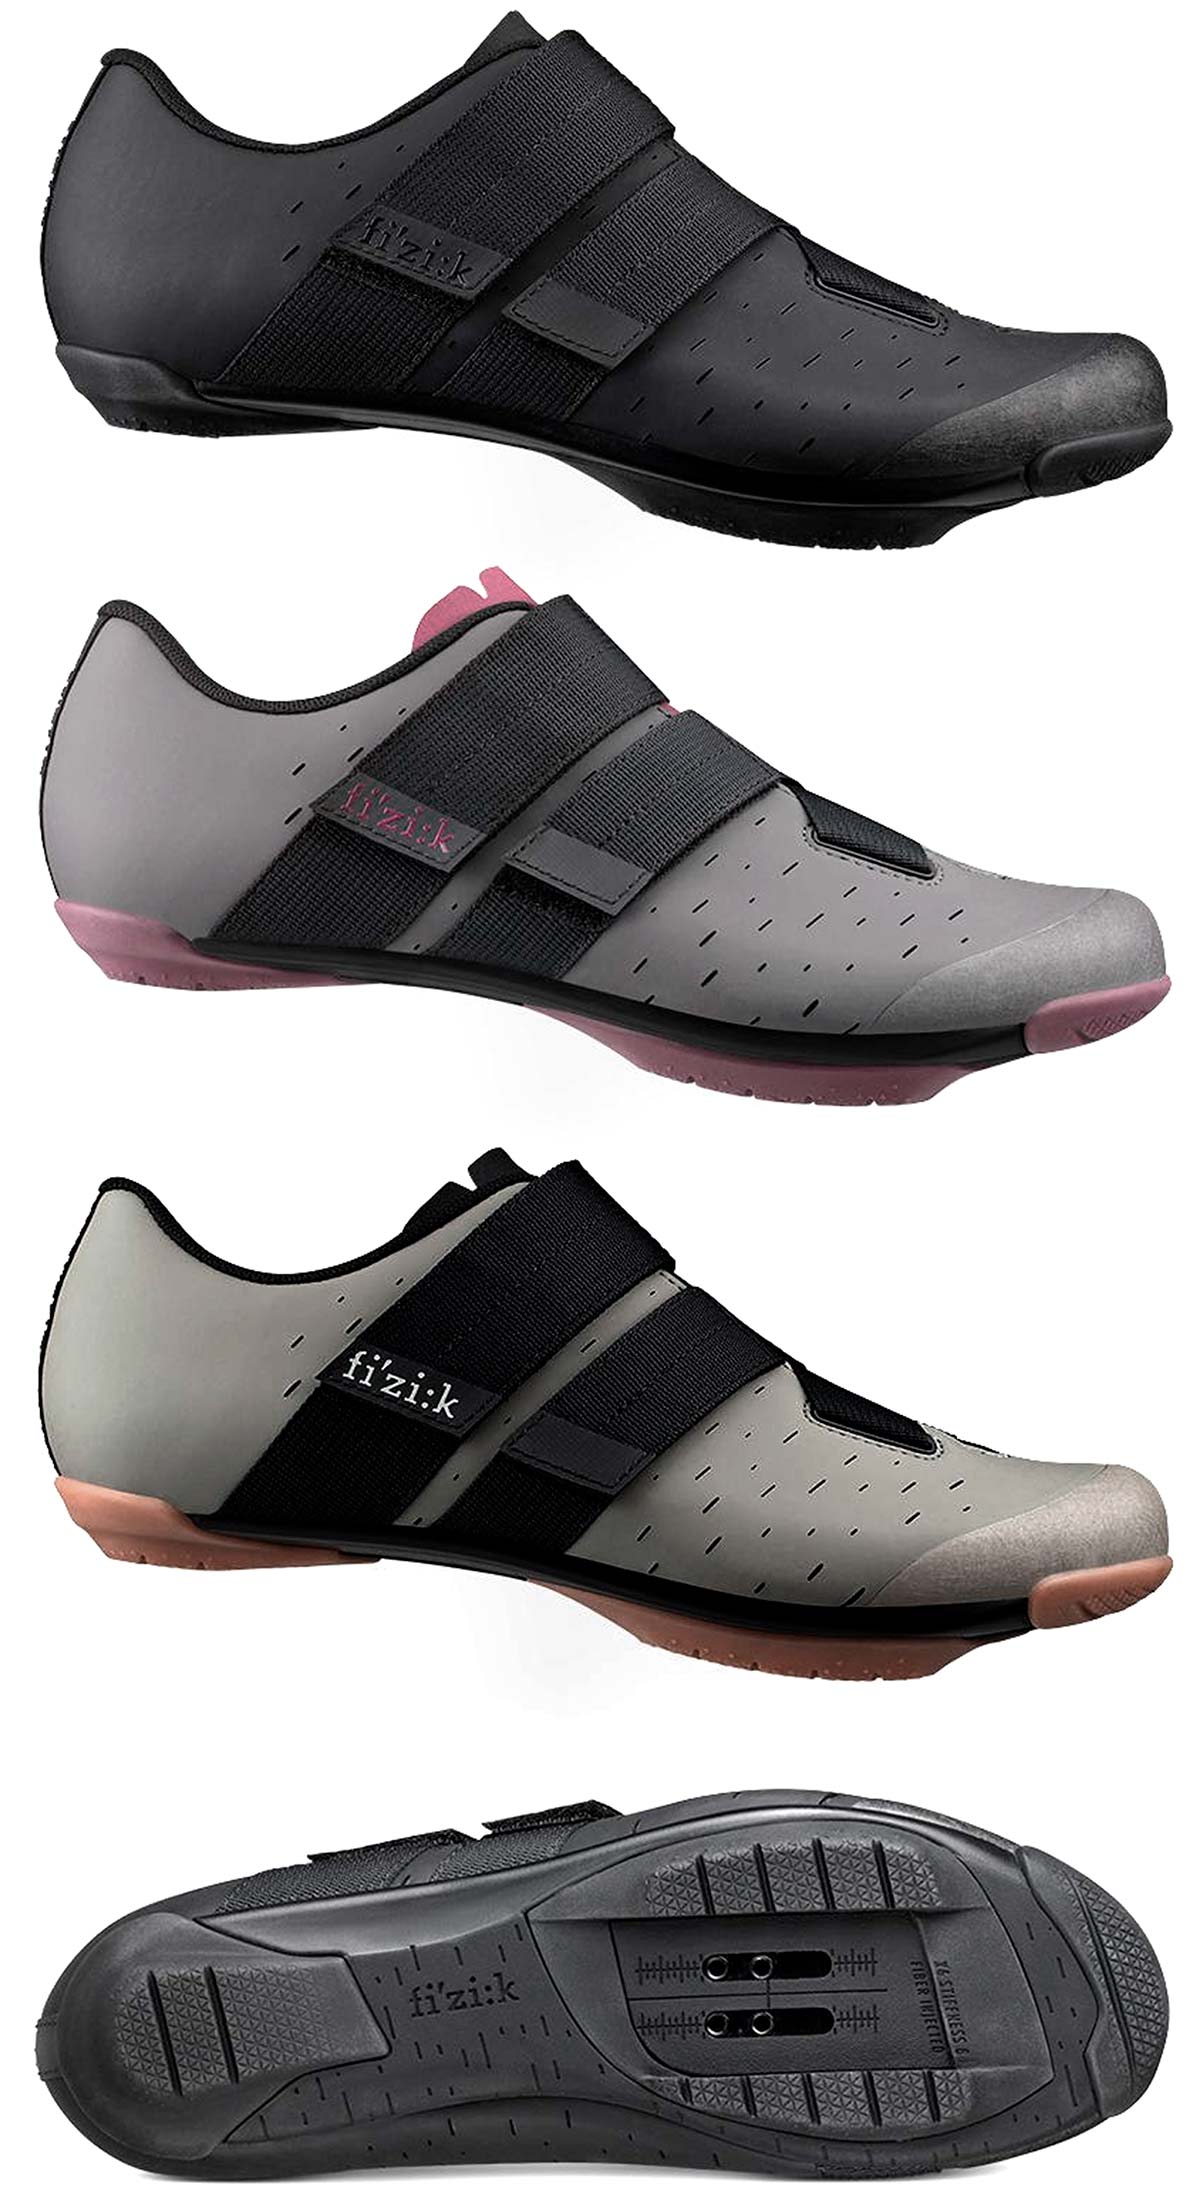 En TodoMountainBike: Fi'zi:k presenta las Terra Powestrap X4, unas zapatillas de alto rendimiento para ciclistas de Gravel